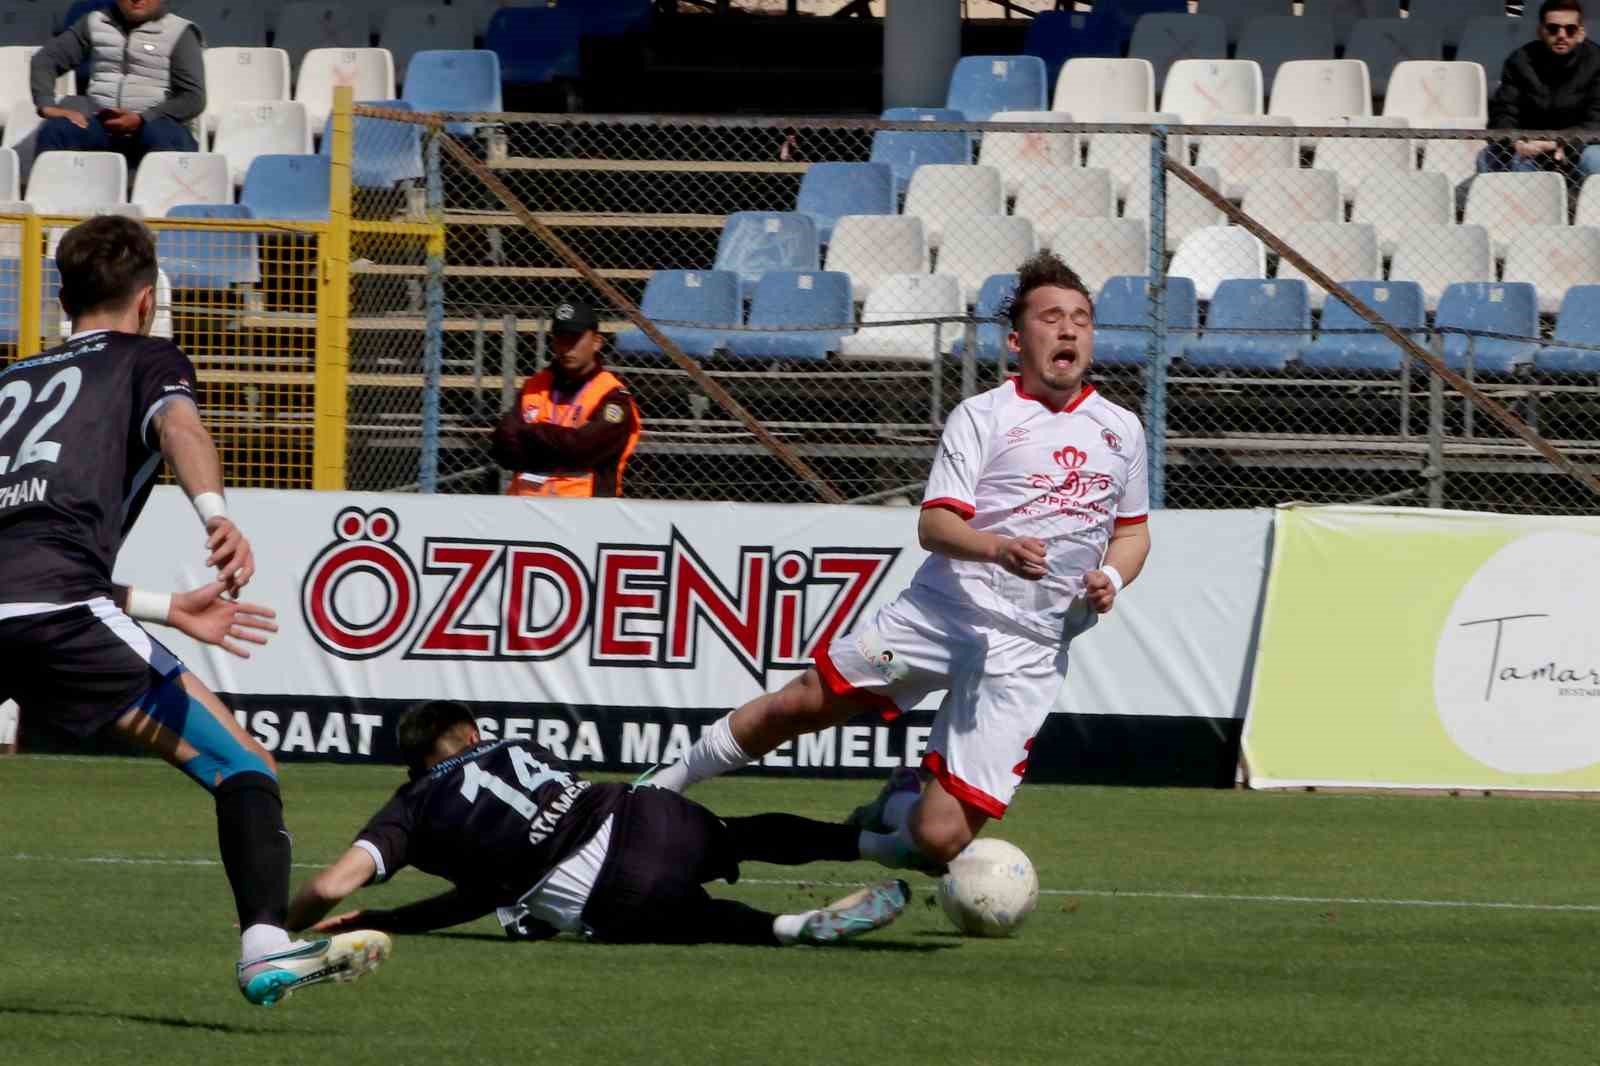 Fethiyespor, evinde kazandı 2-1
